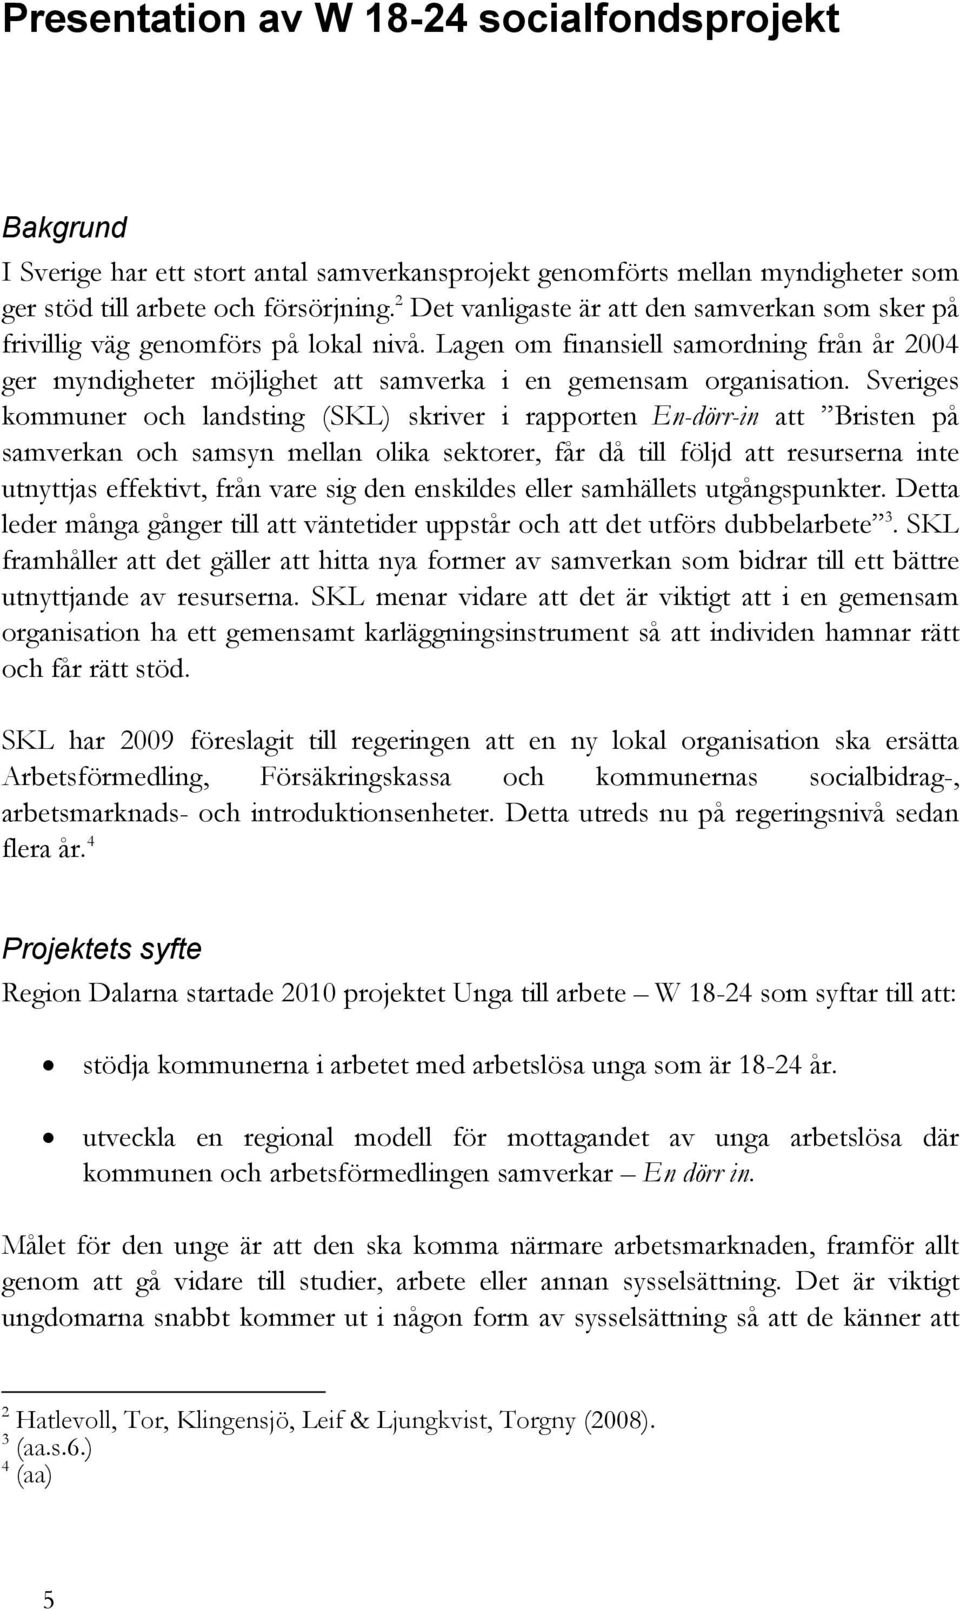 Sveriges kommuner och landsting (SKL) skriver i rapporten En-dörr-in att Bristen på samverkan och samsyn mellan olika sektorer, får då till följd att resurserna inte utnyttjas effektivt, från vare